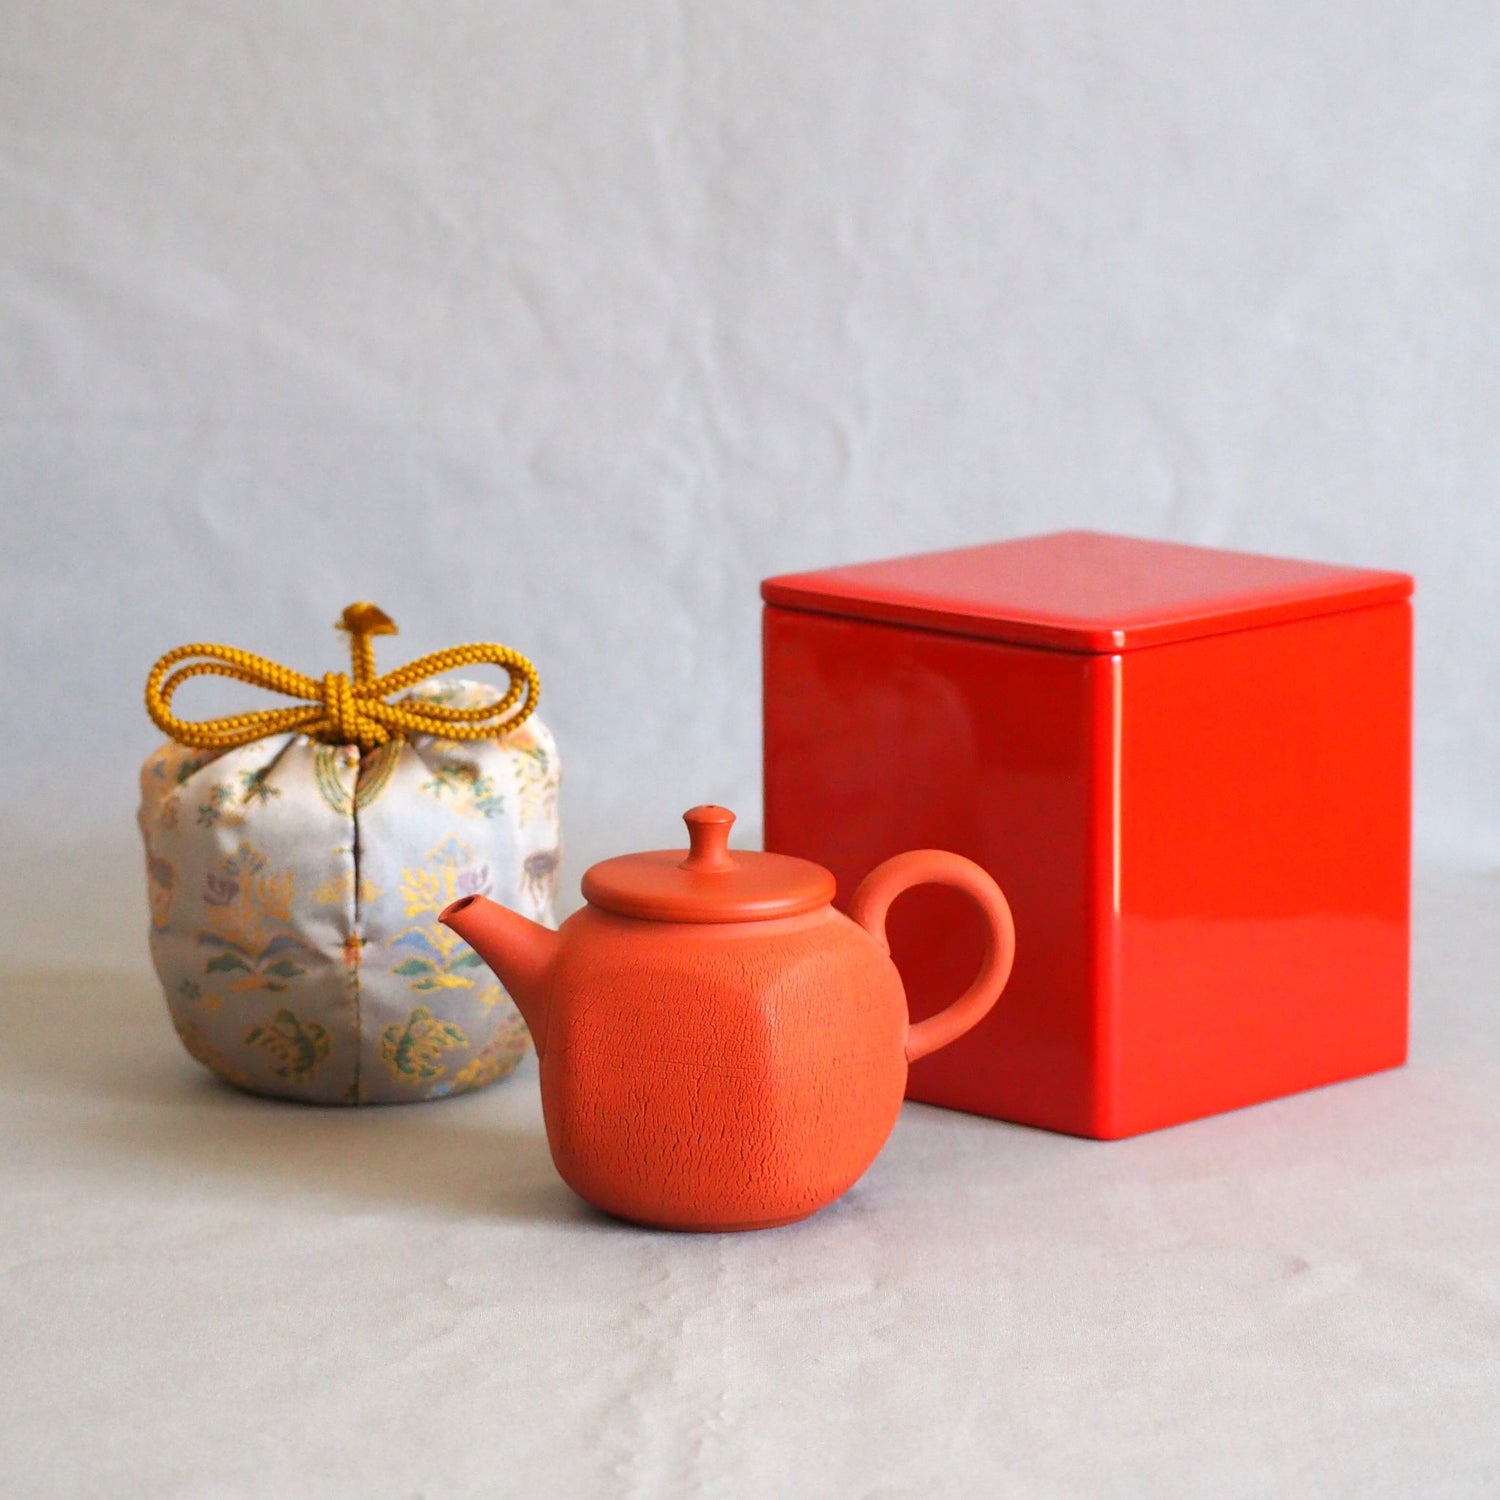 中国茶向け急須、仕覆、漆塗箱を組み合わせた急須セットのコレクションです。